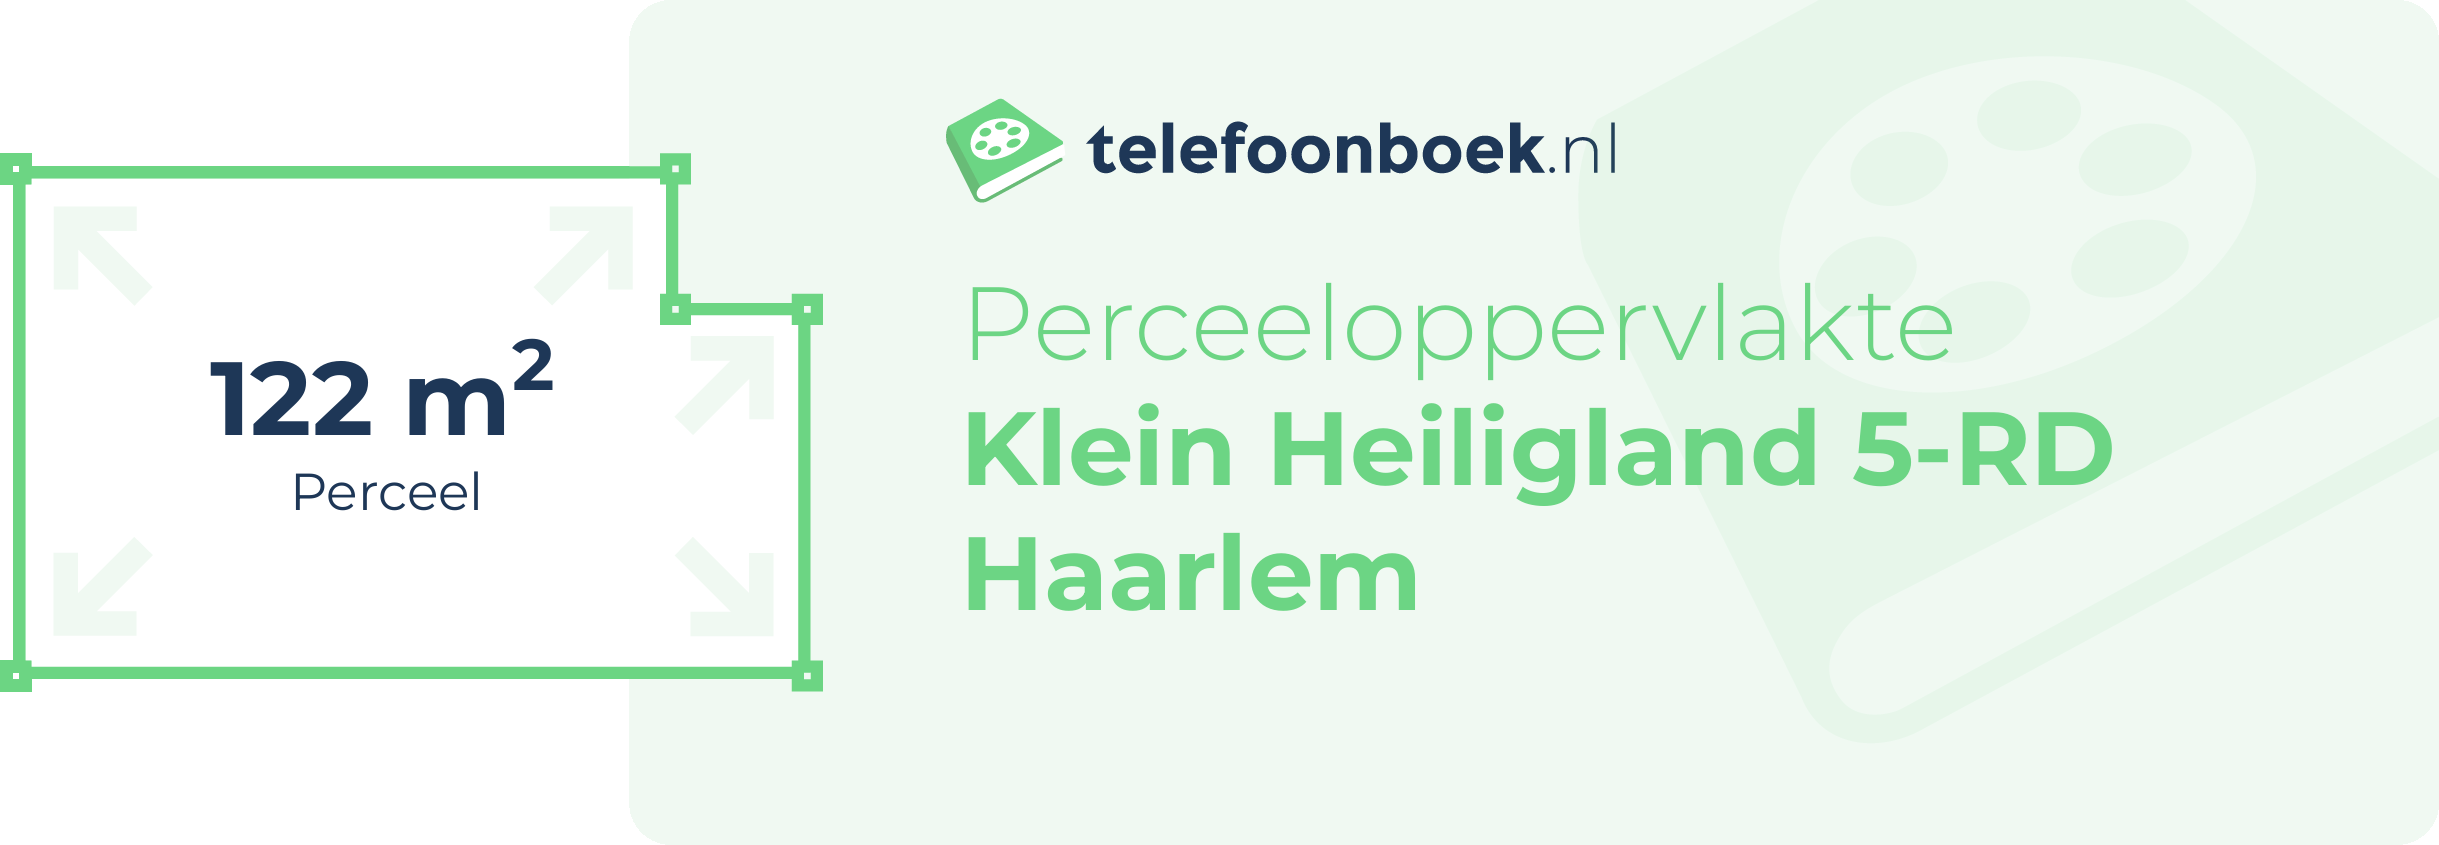 Perceeloppervlakte Klein Heiligland 5-RD Haarlem